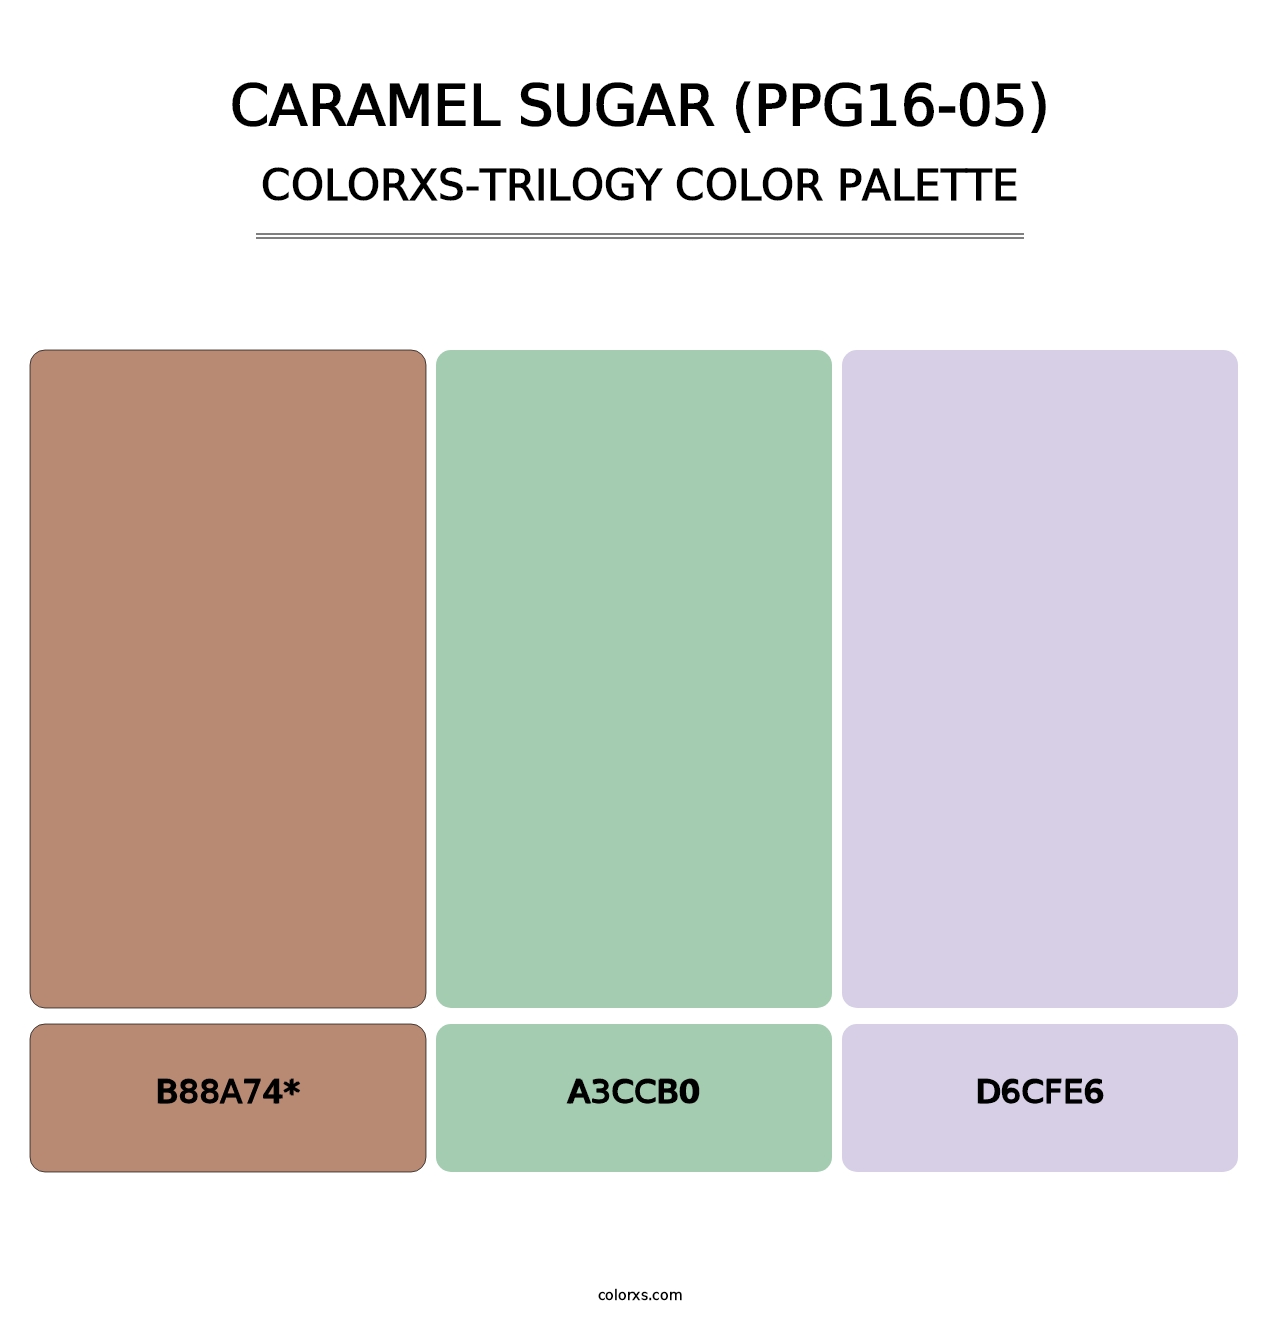 Caramel Sugar (PPG16-05) - Colorxs Trilogy Palette